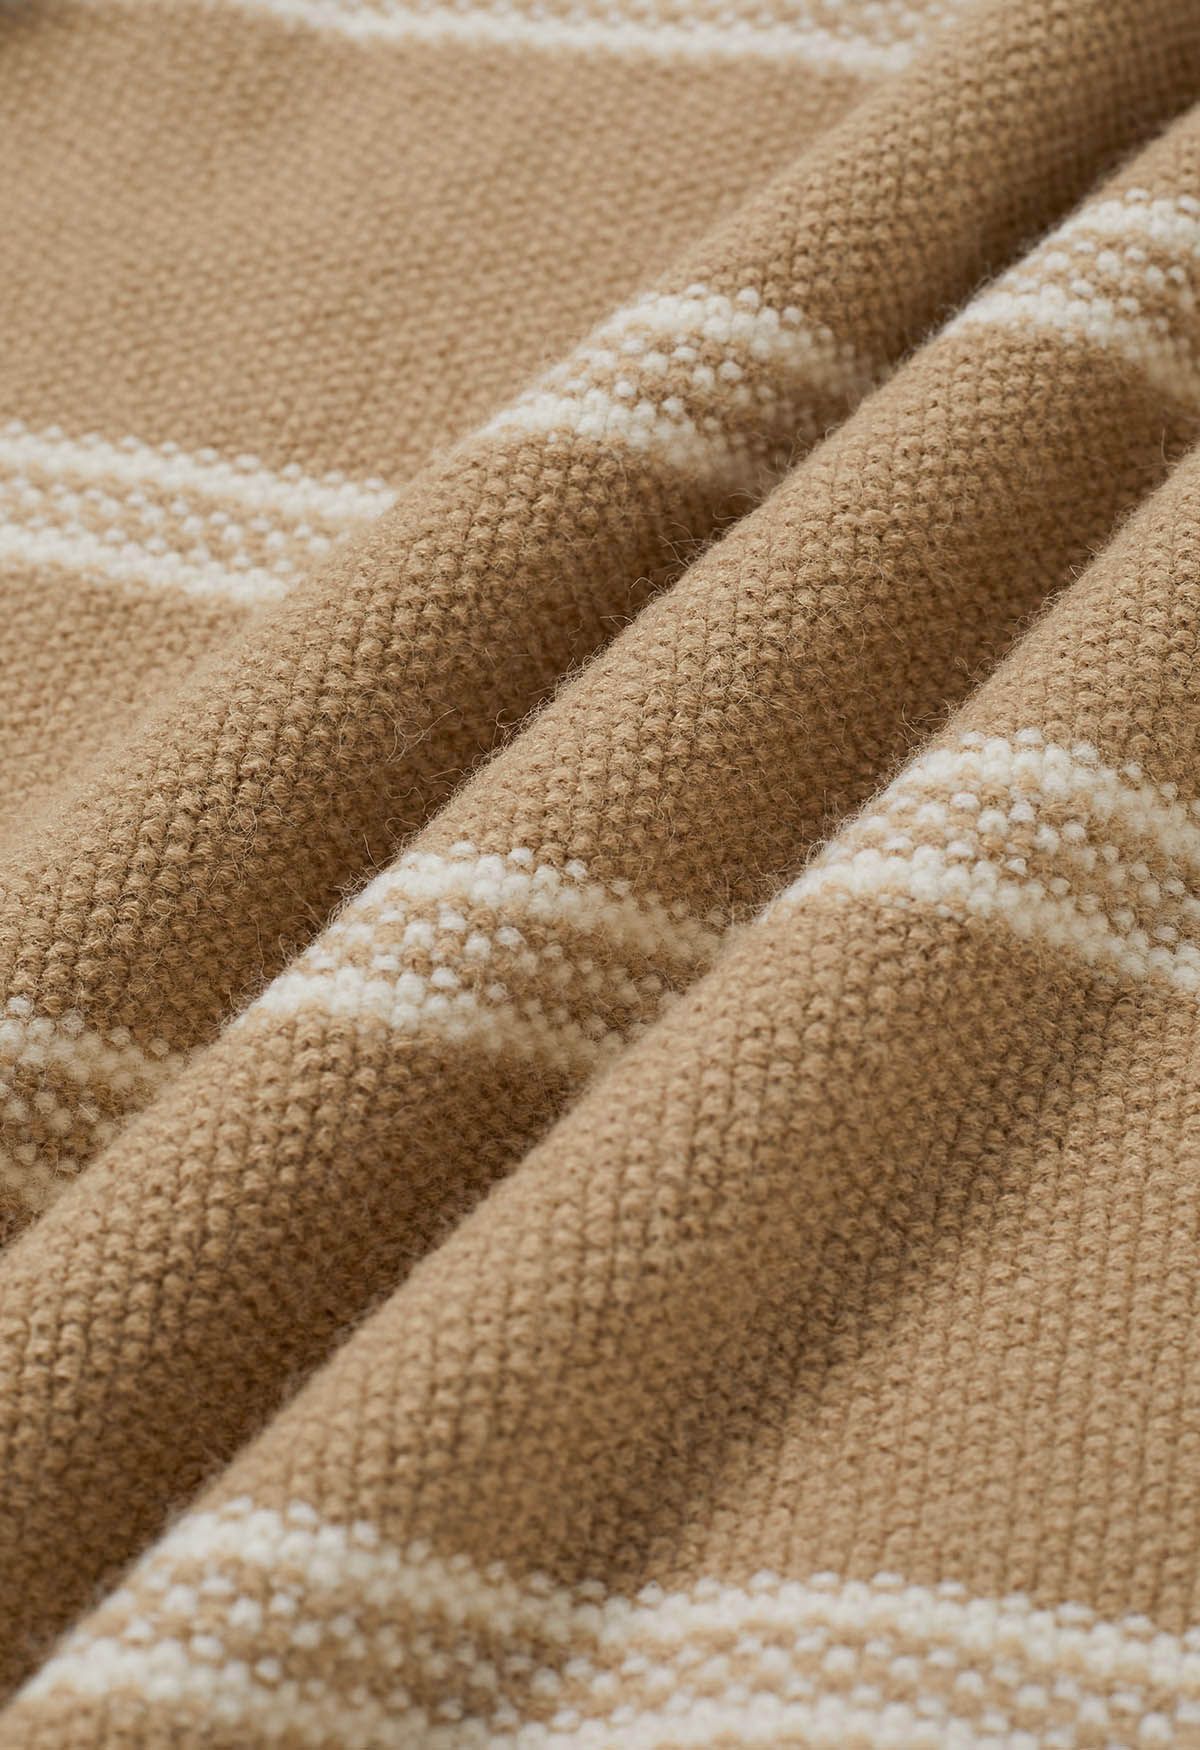 Denim Sleeve Spliced Striped Knit Sweater in Camel